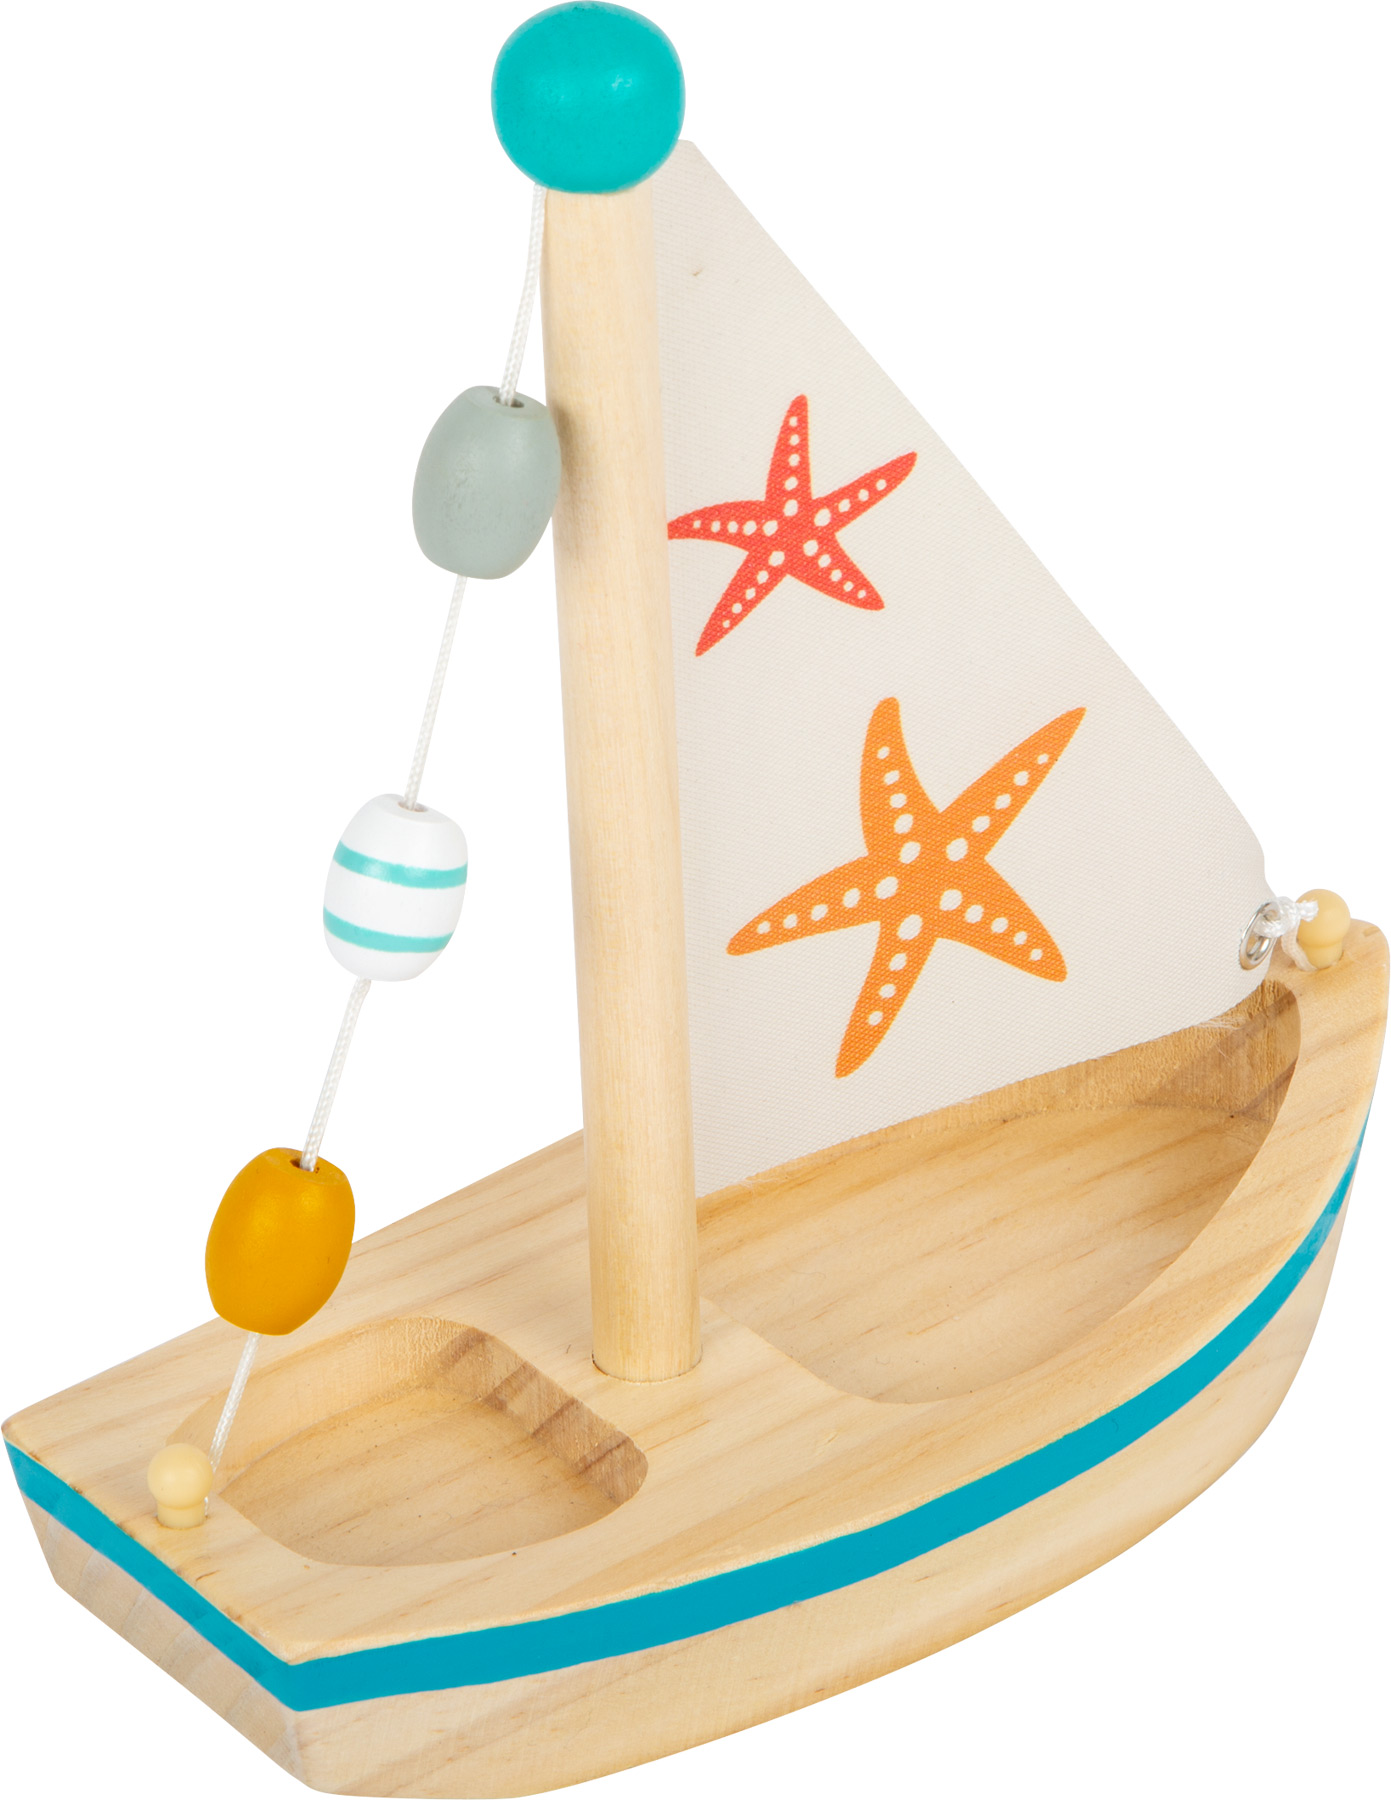 Badespaß aus Holz NEU!# Legler 11658 Segelboot "Seestern" Wasserspielzeug 